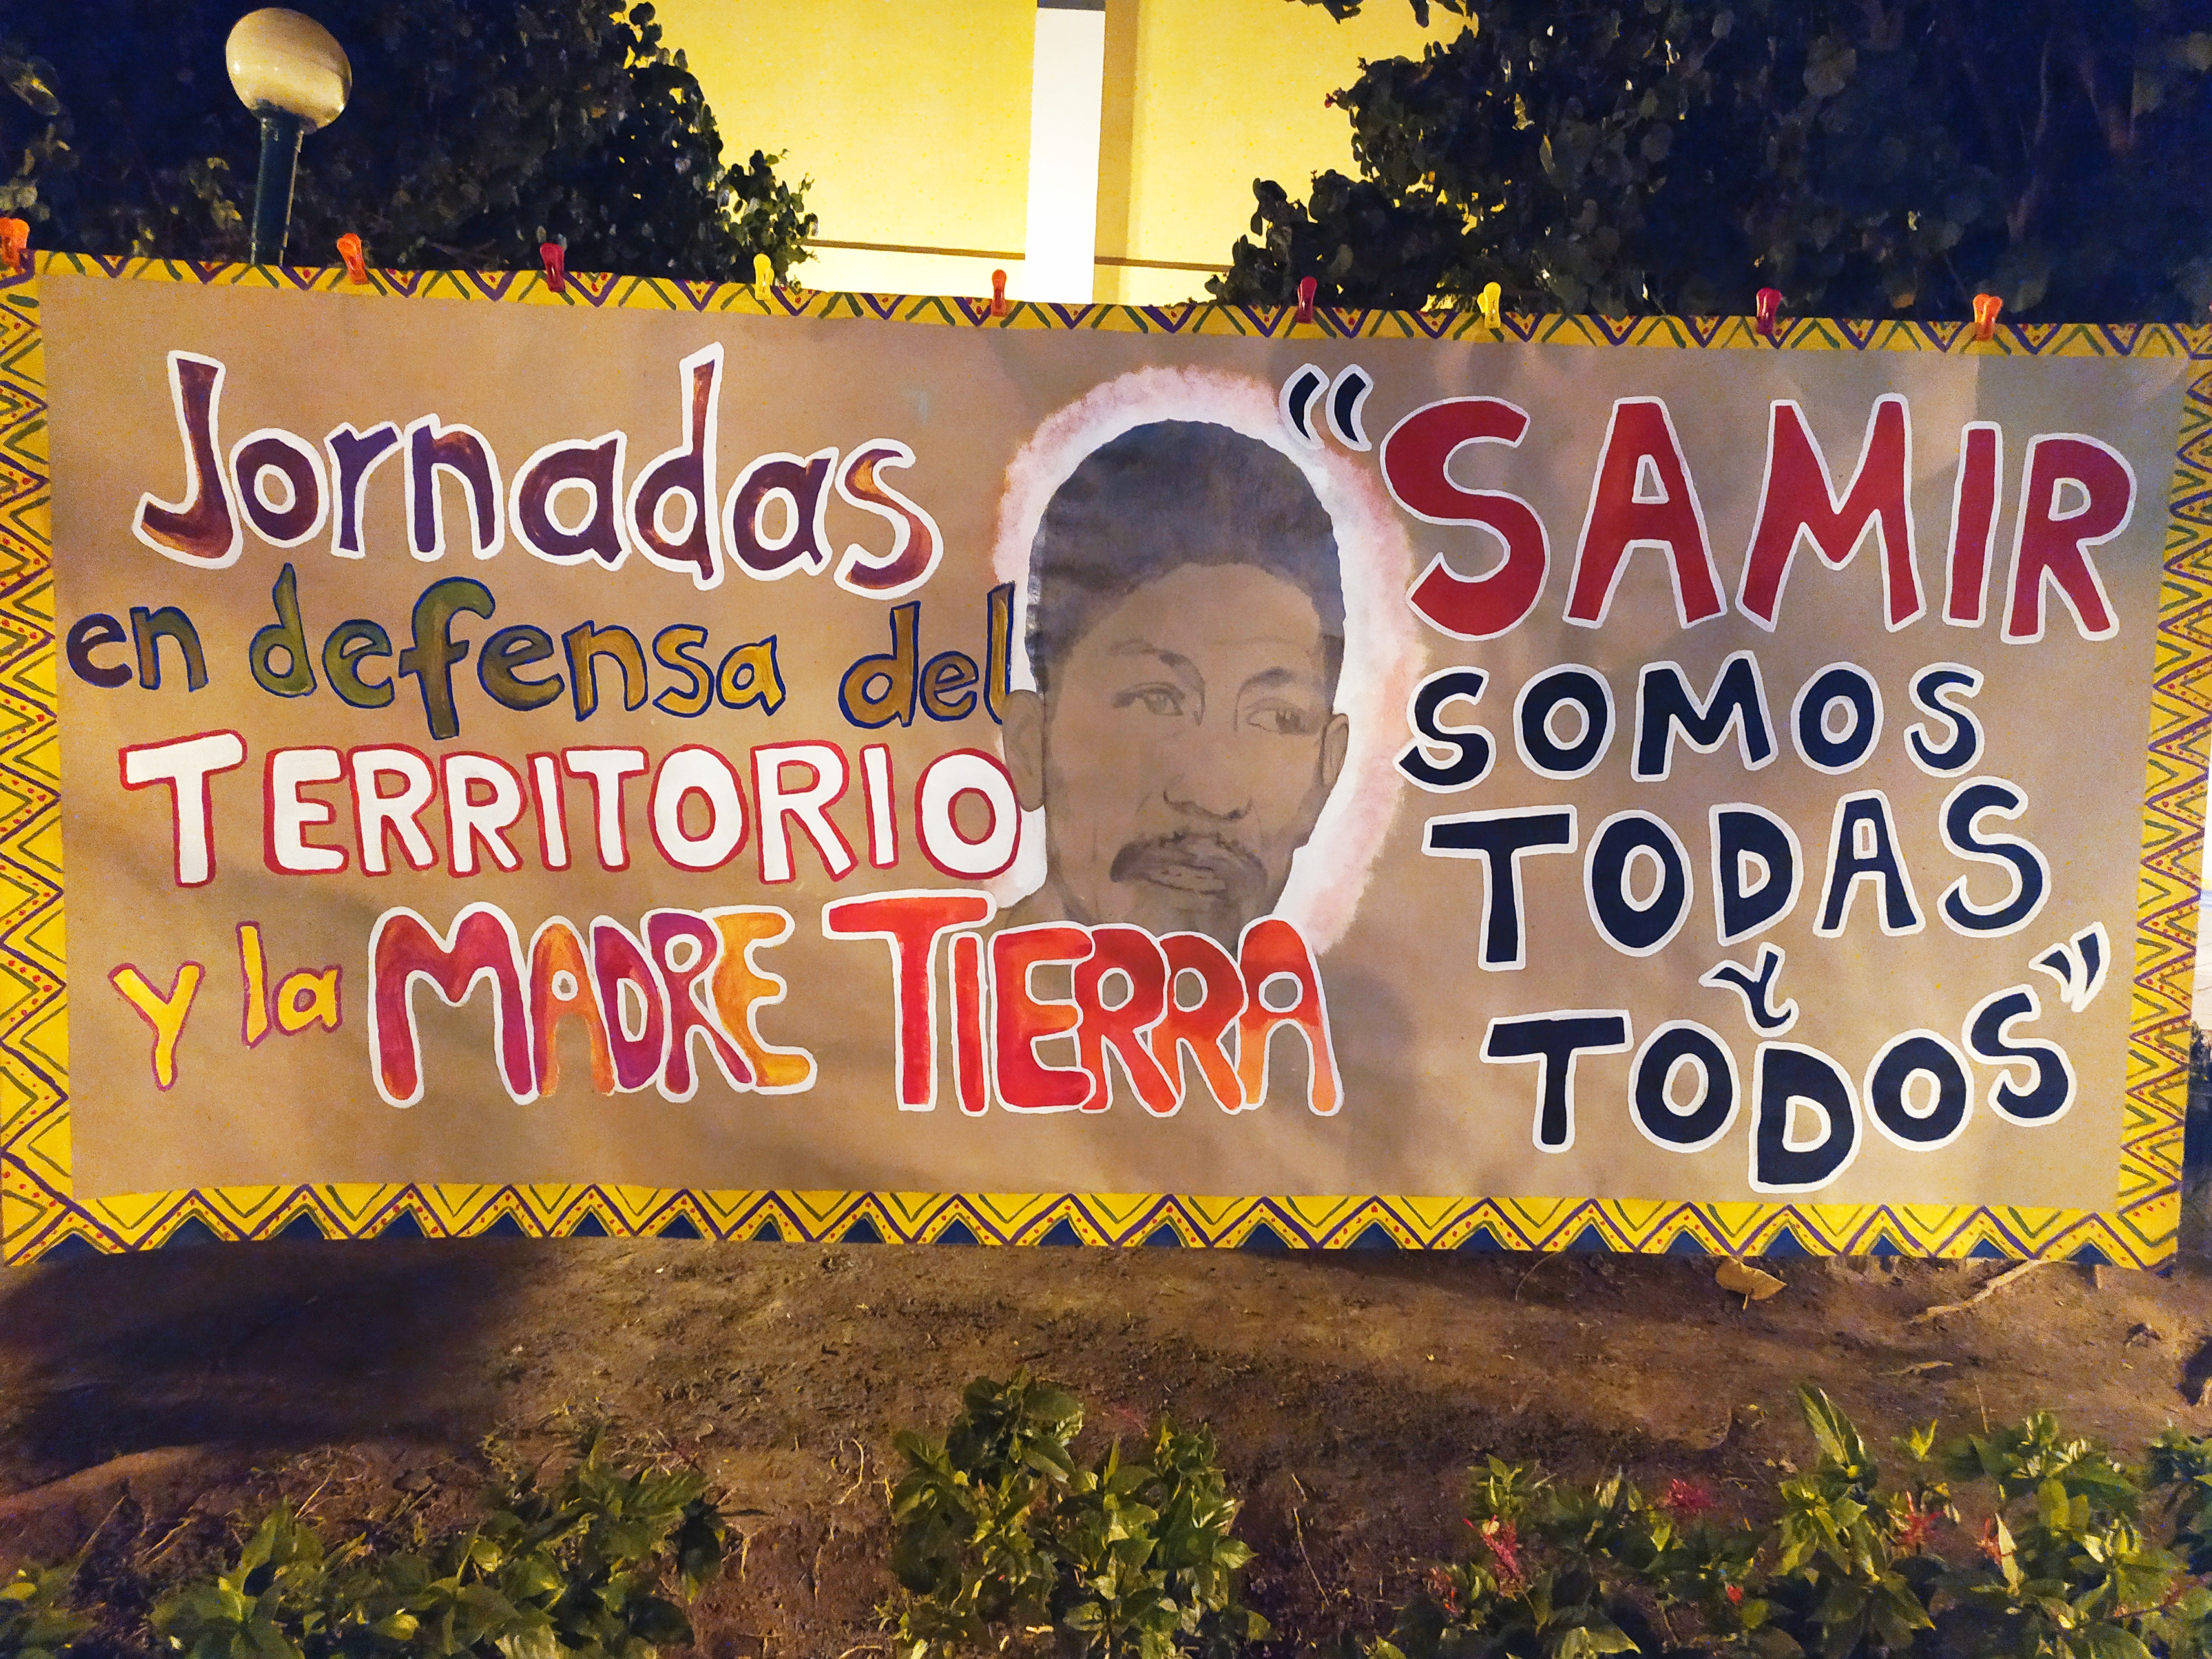 Galería de fotos de acción dislocada en Colima. Jornadas “Samir Somos Todas y Todos”